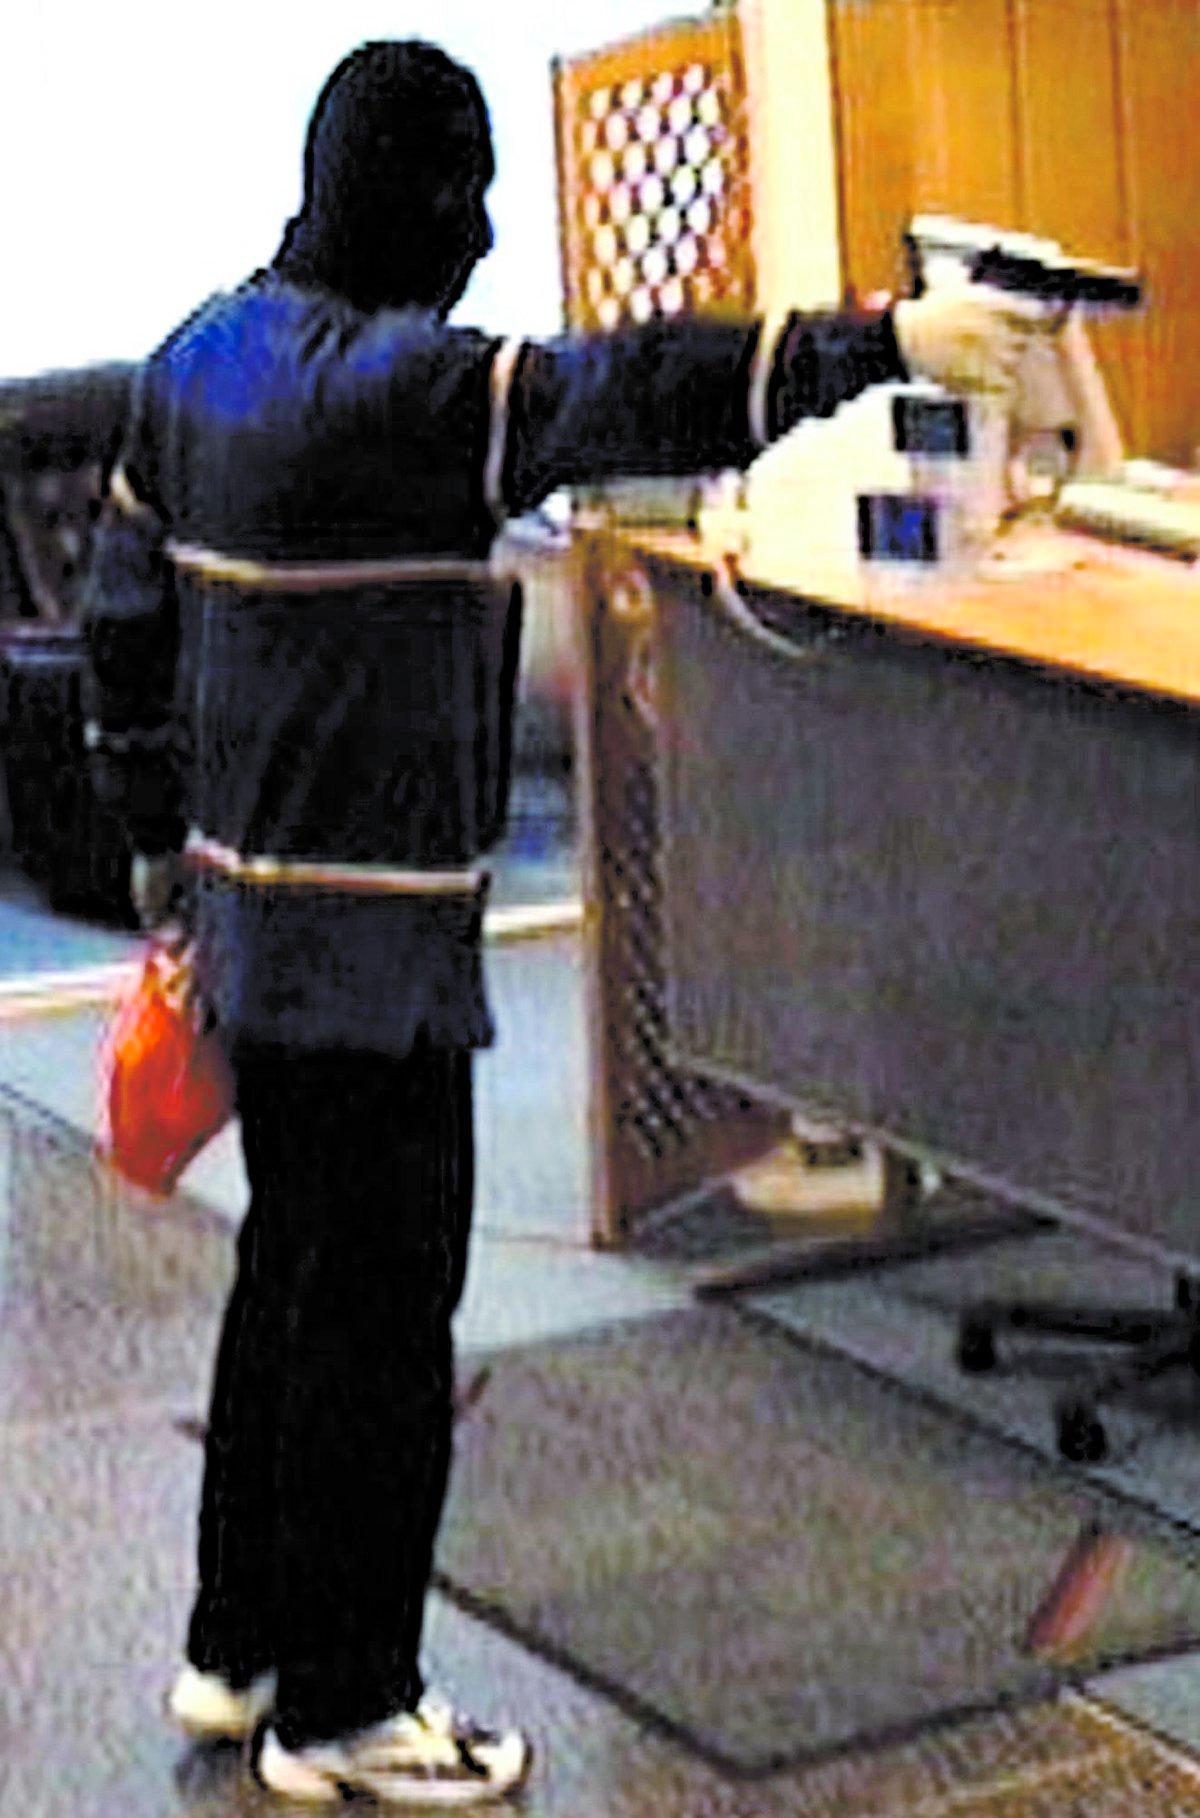 HÄR SLÅR HAN TILL Rånaren attackerar en bank i Svenljunga. Bankens kamera registrerar förloppet.